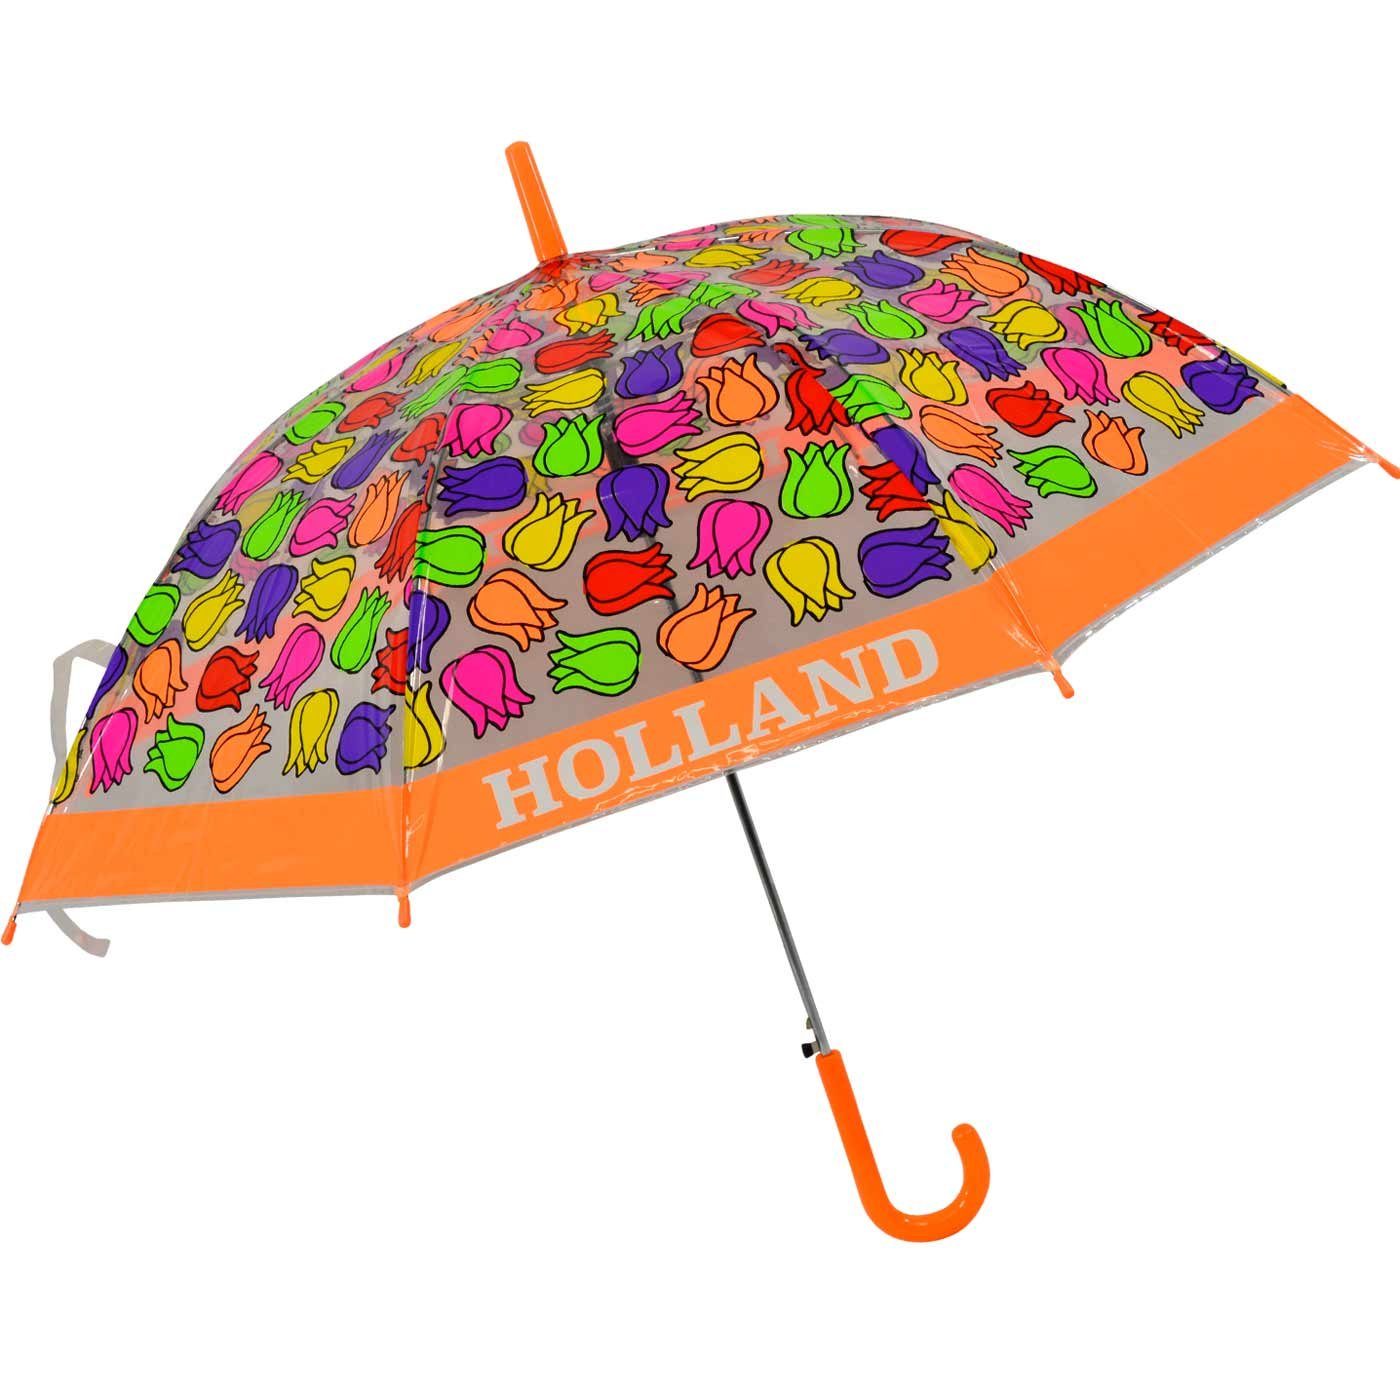 Impliva Langregenschirm transparent bunt durchsichtig Kinderschirm orange - Falconetti Tulpen